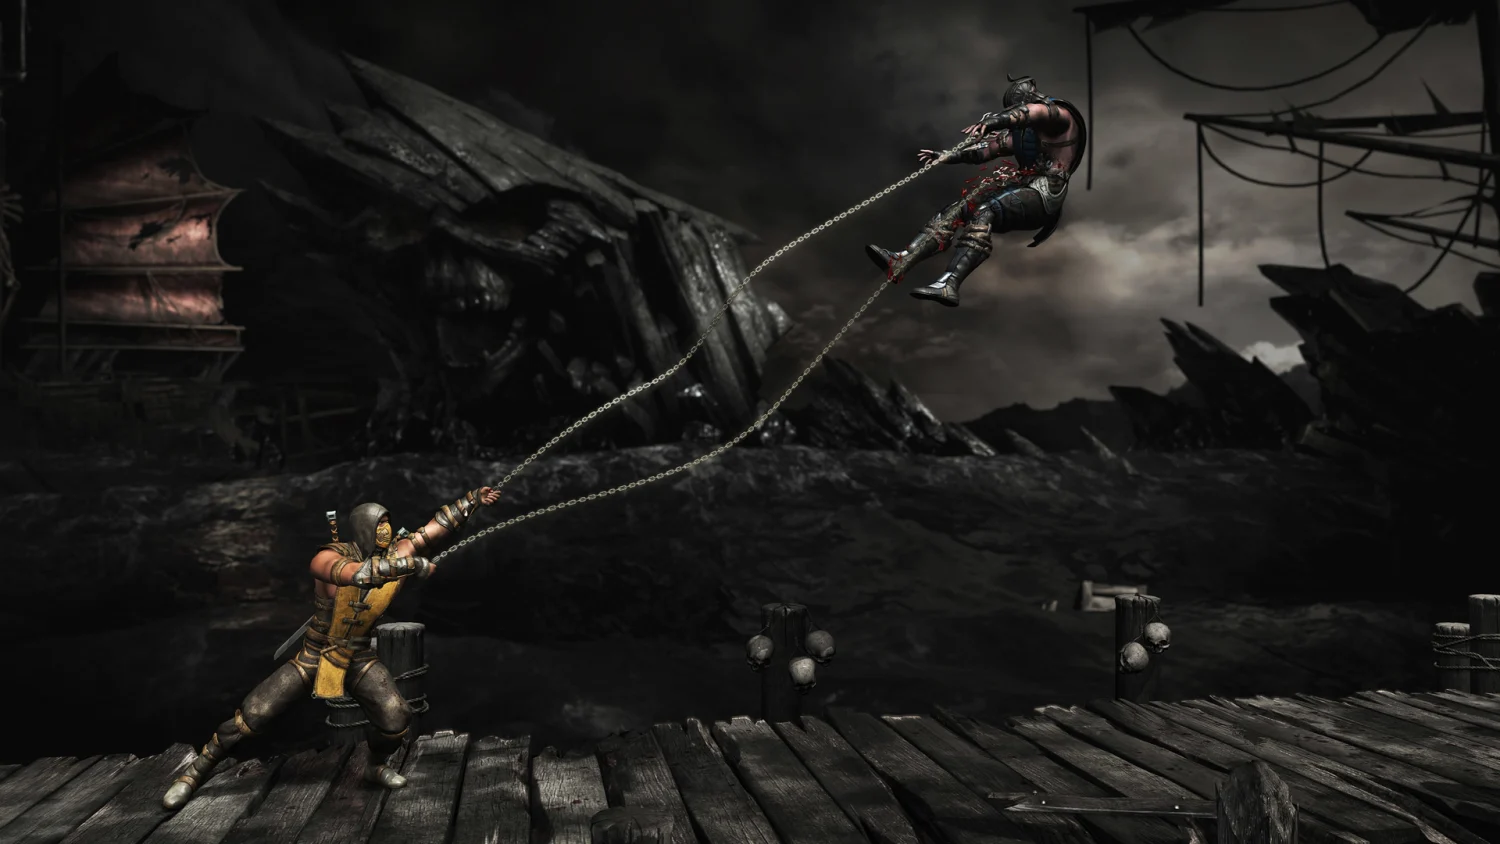  Mortal Kombat XL (PS4) : Video Games